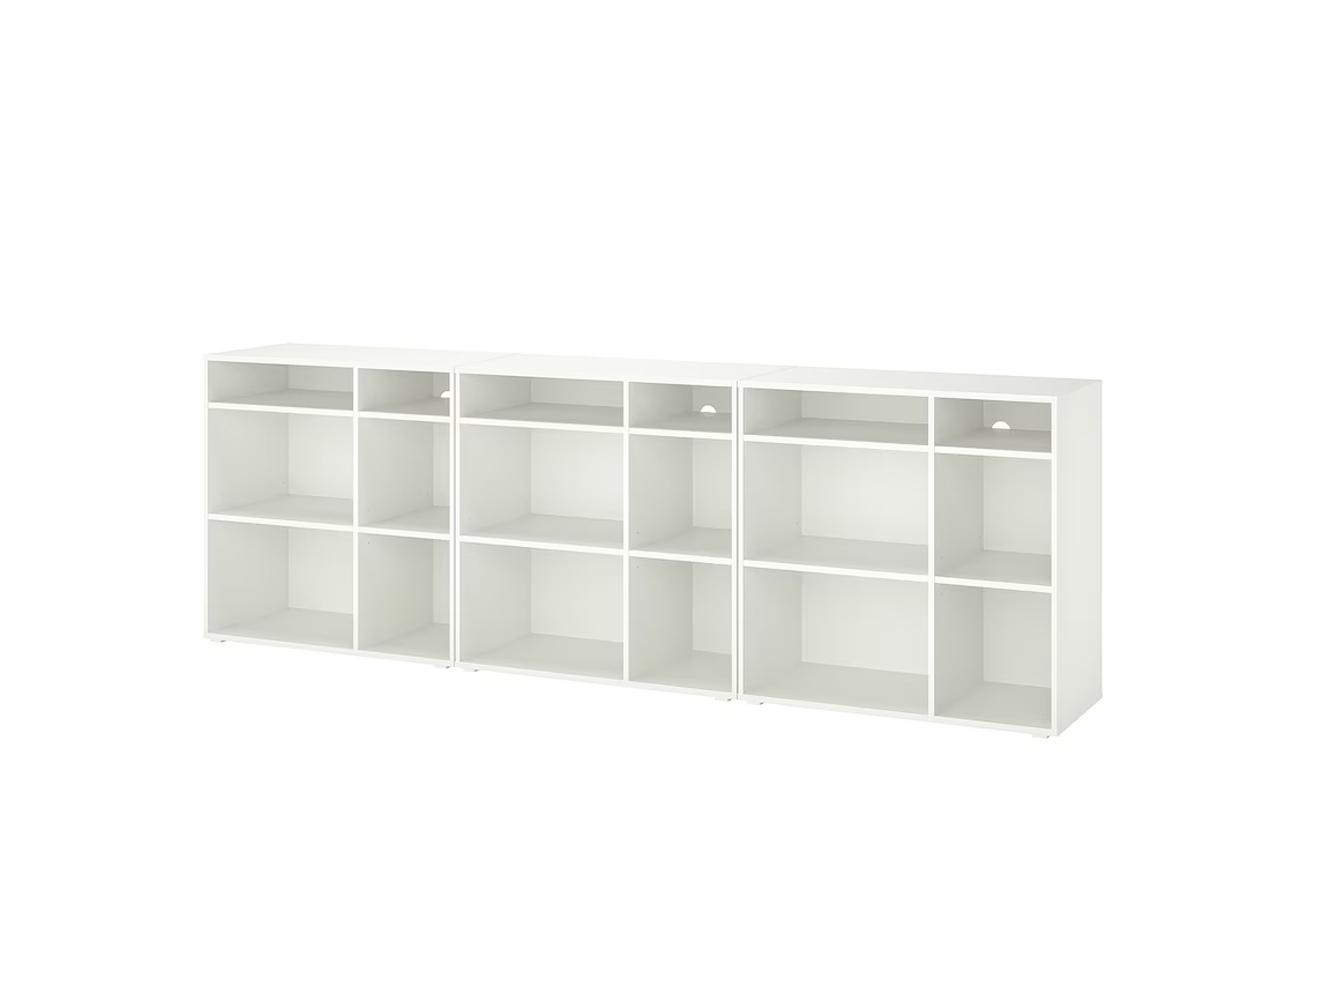  Стеллаж Вихалс white ИКЕА (IKEA) изображение товара